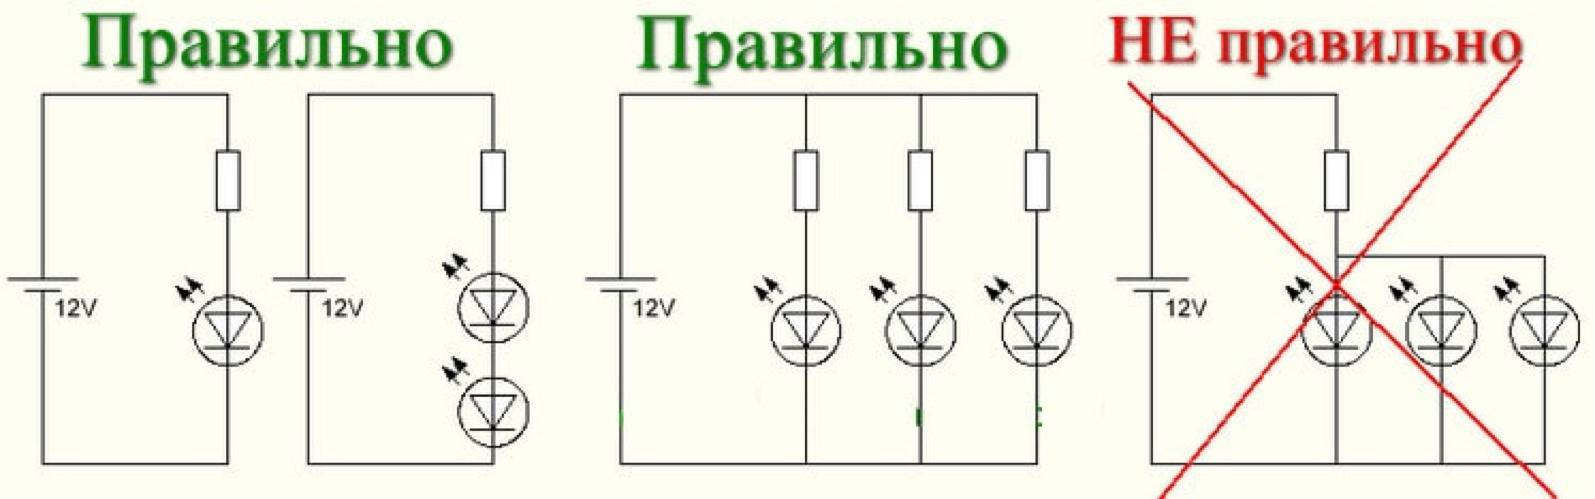 Электрические схемы светодиода. Схема подключения диода через резистор. Схема подключения сопротивления для светодиода. Схема диод резистор параллельное соединение. Схема подключения светодиодов 3w к 12 вольтам.